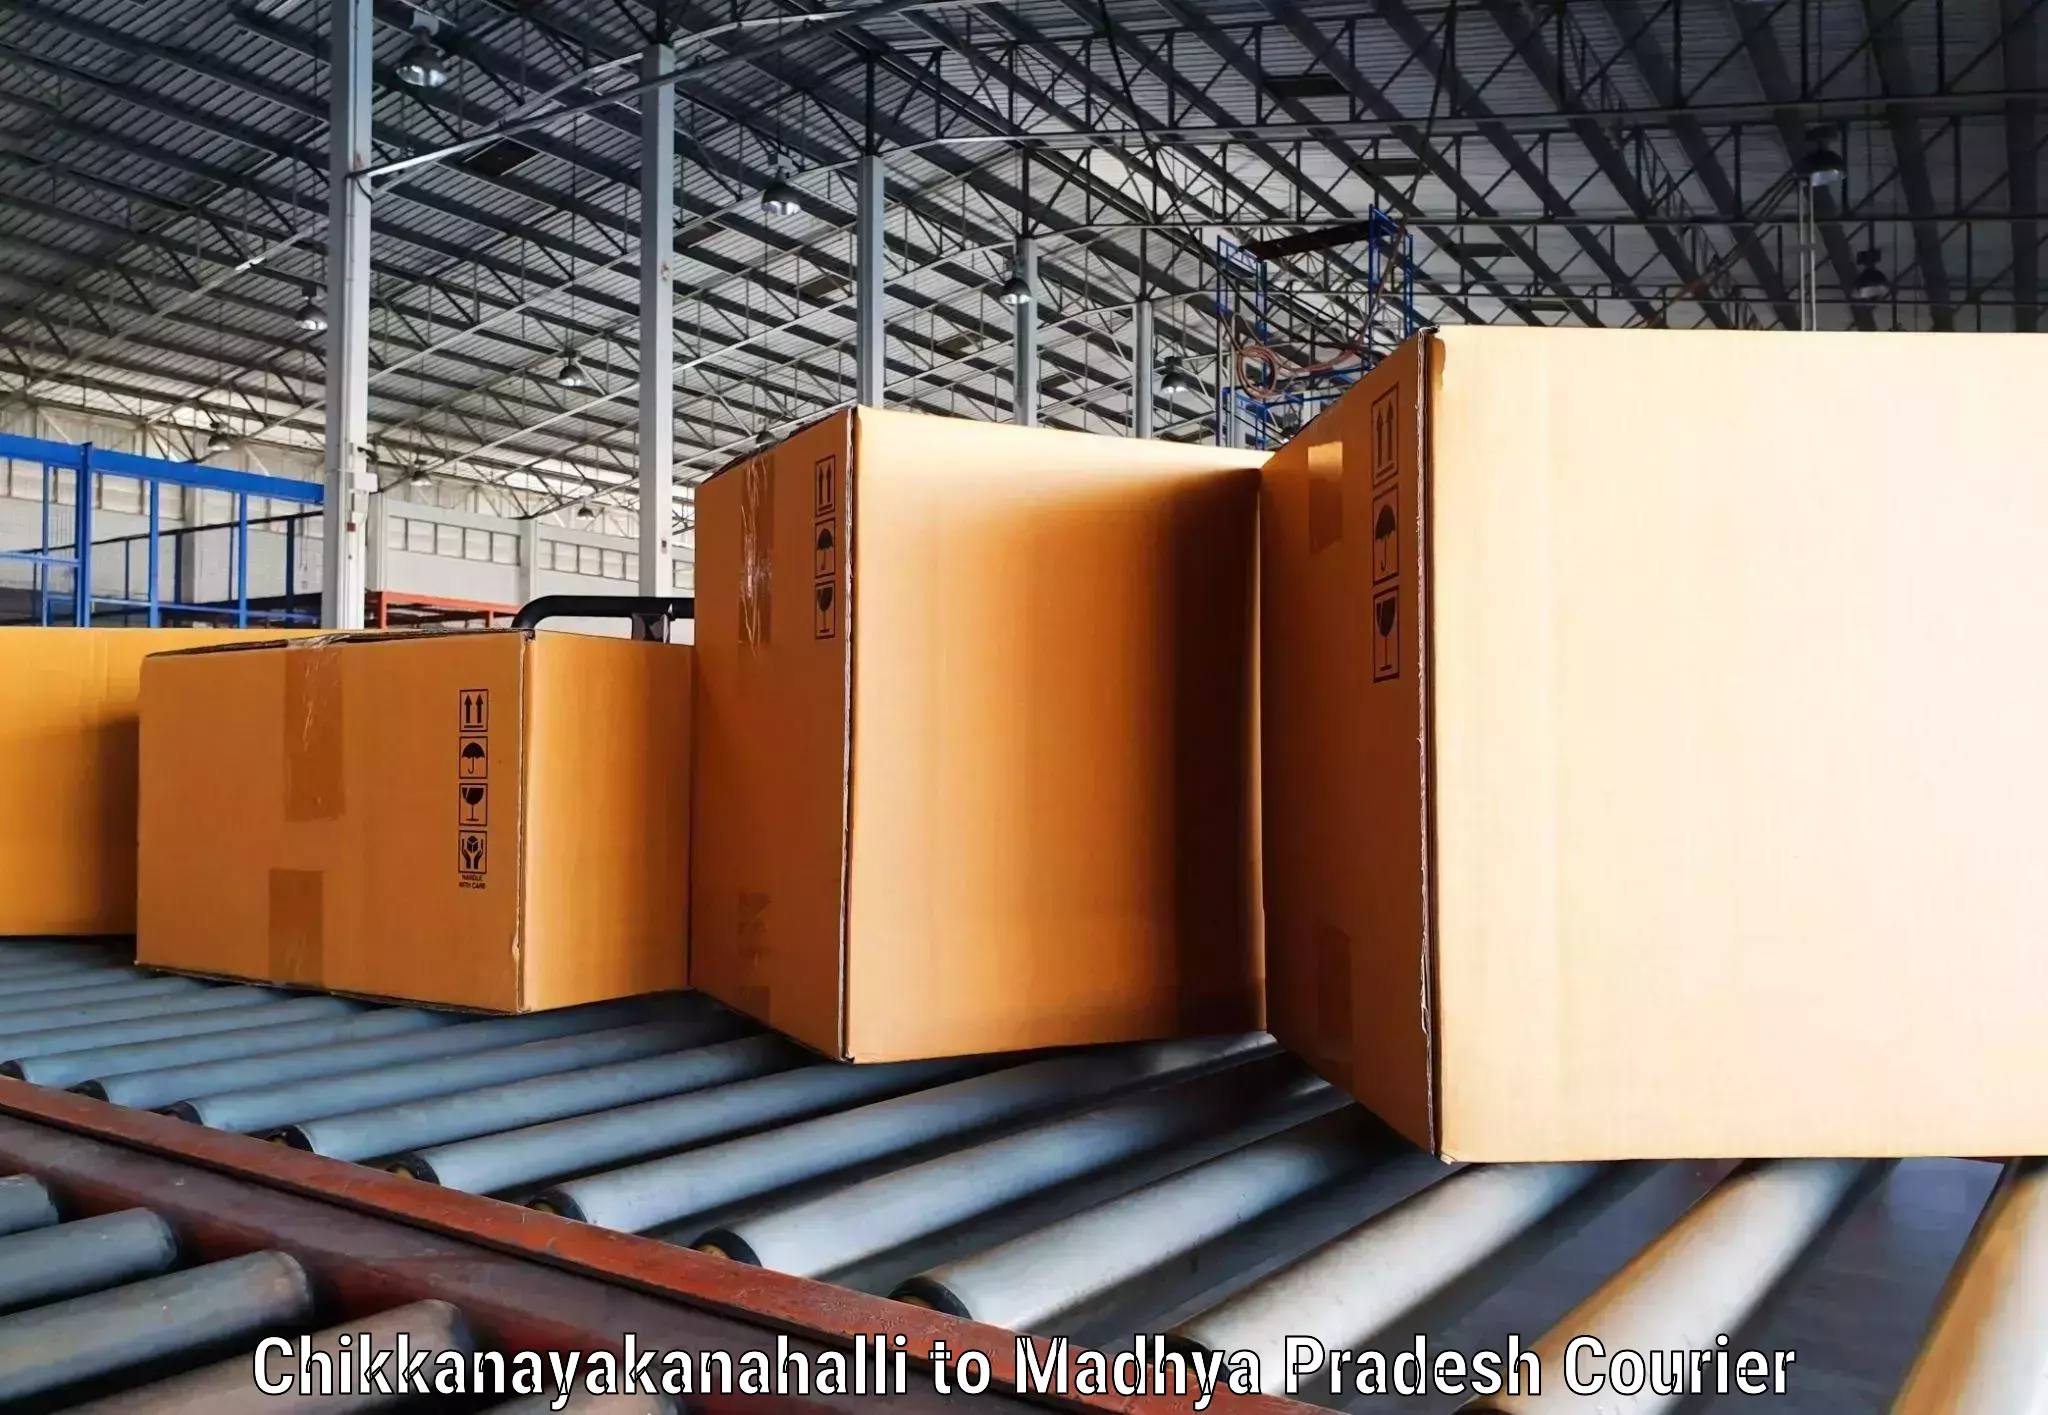 High-efficiency logistics in Chikkanayakanahalli to Kotma